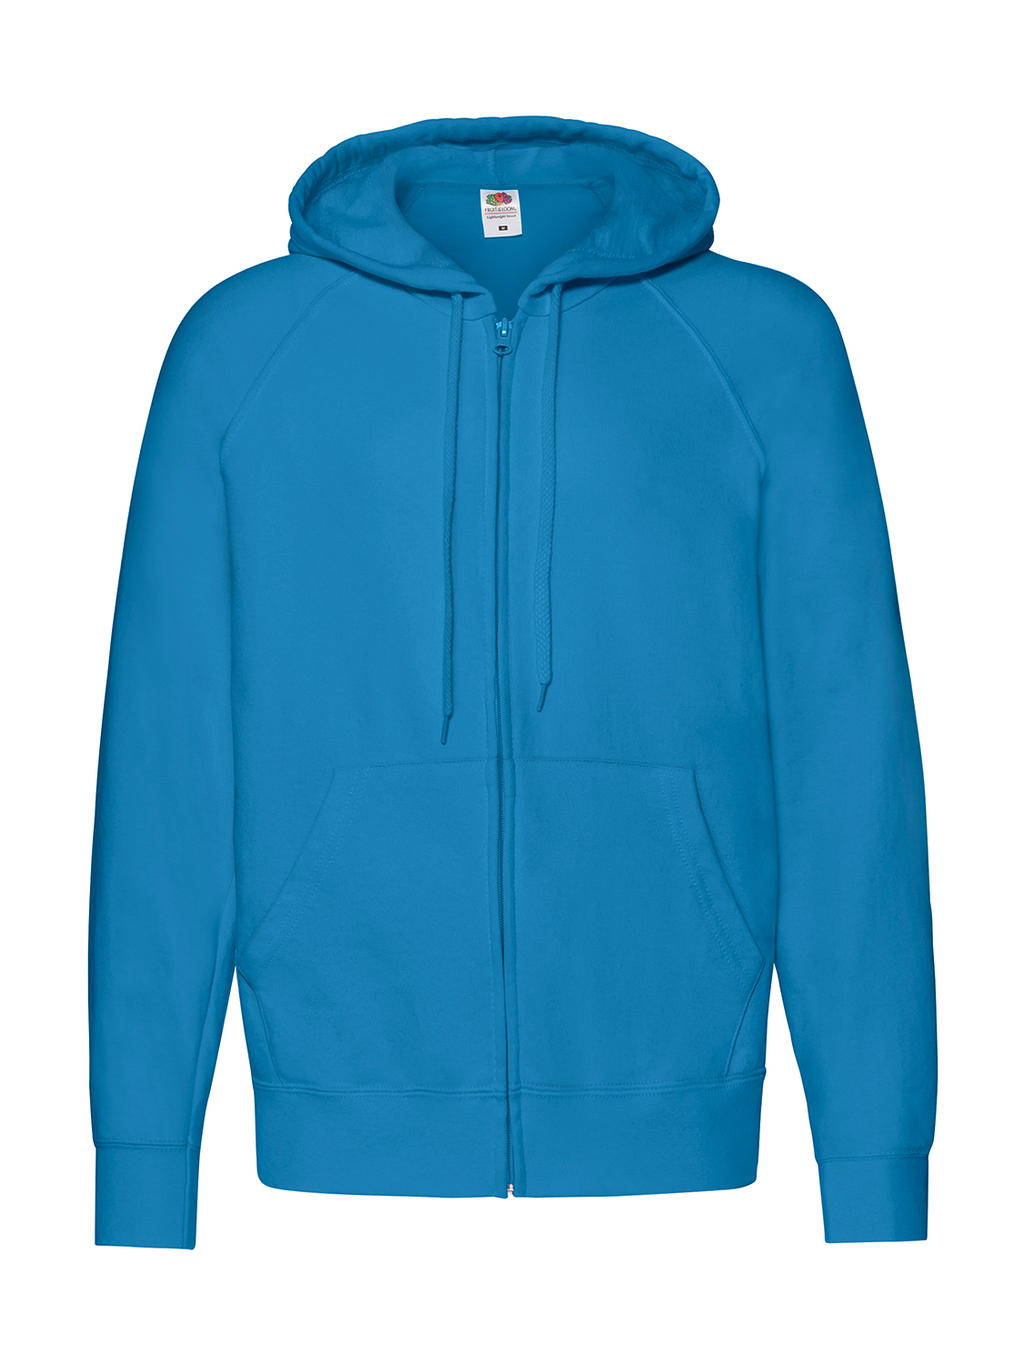  Lightweight Hooded Sweat Jacket in Farbe Azure Blue